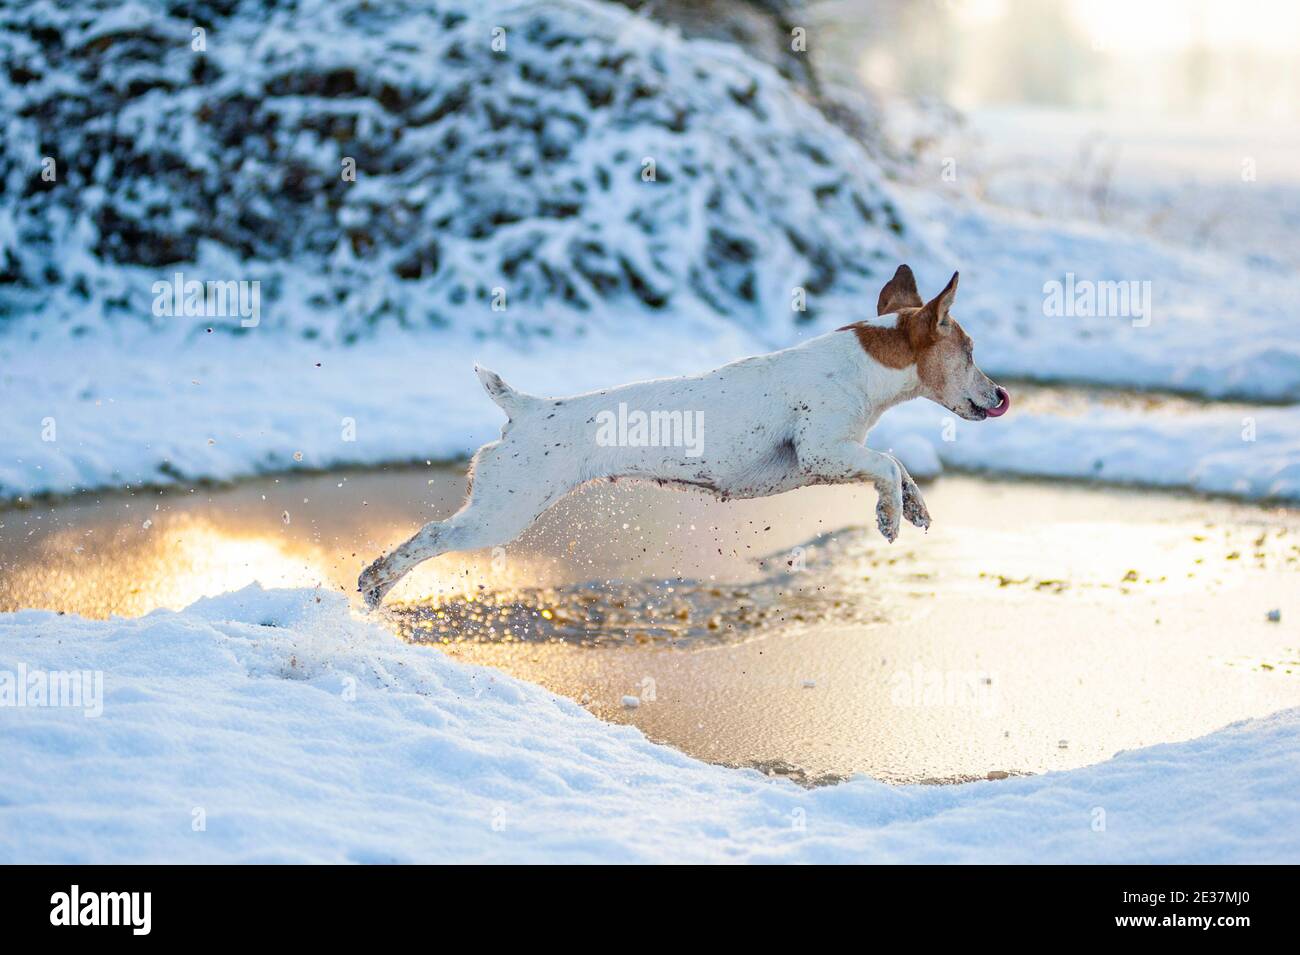 Jack Russell Terrier sautant au-dessus d'un étang glacé. Environnement enneigé, le soleil se réfléchit sur l'étang Banque D'Images